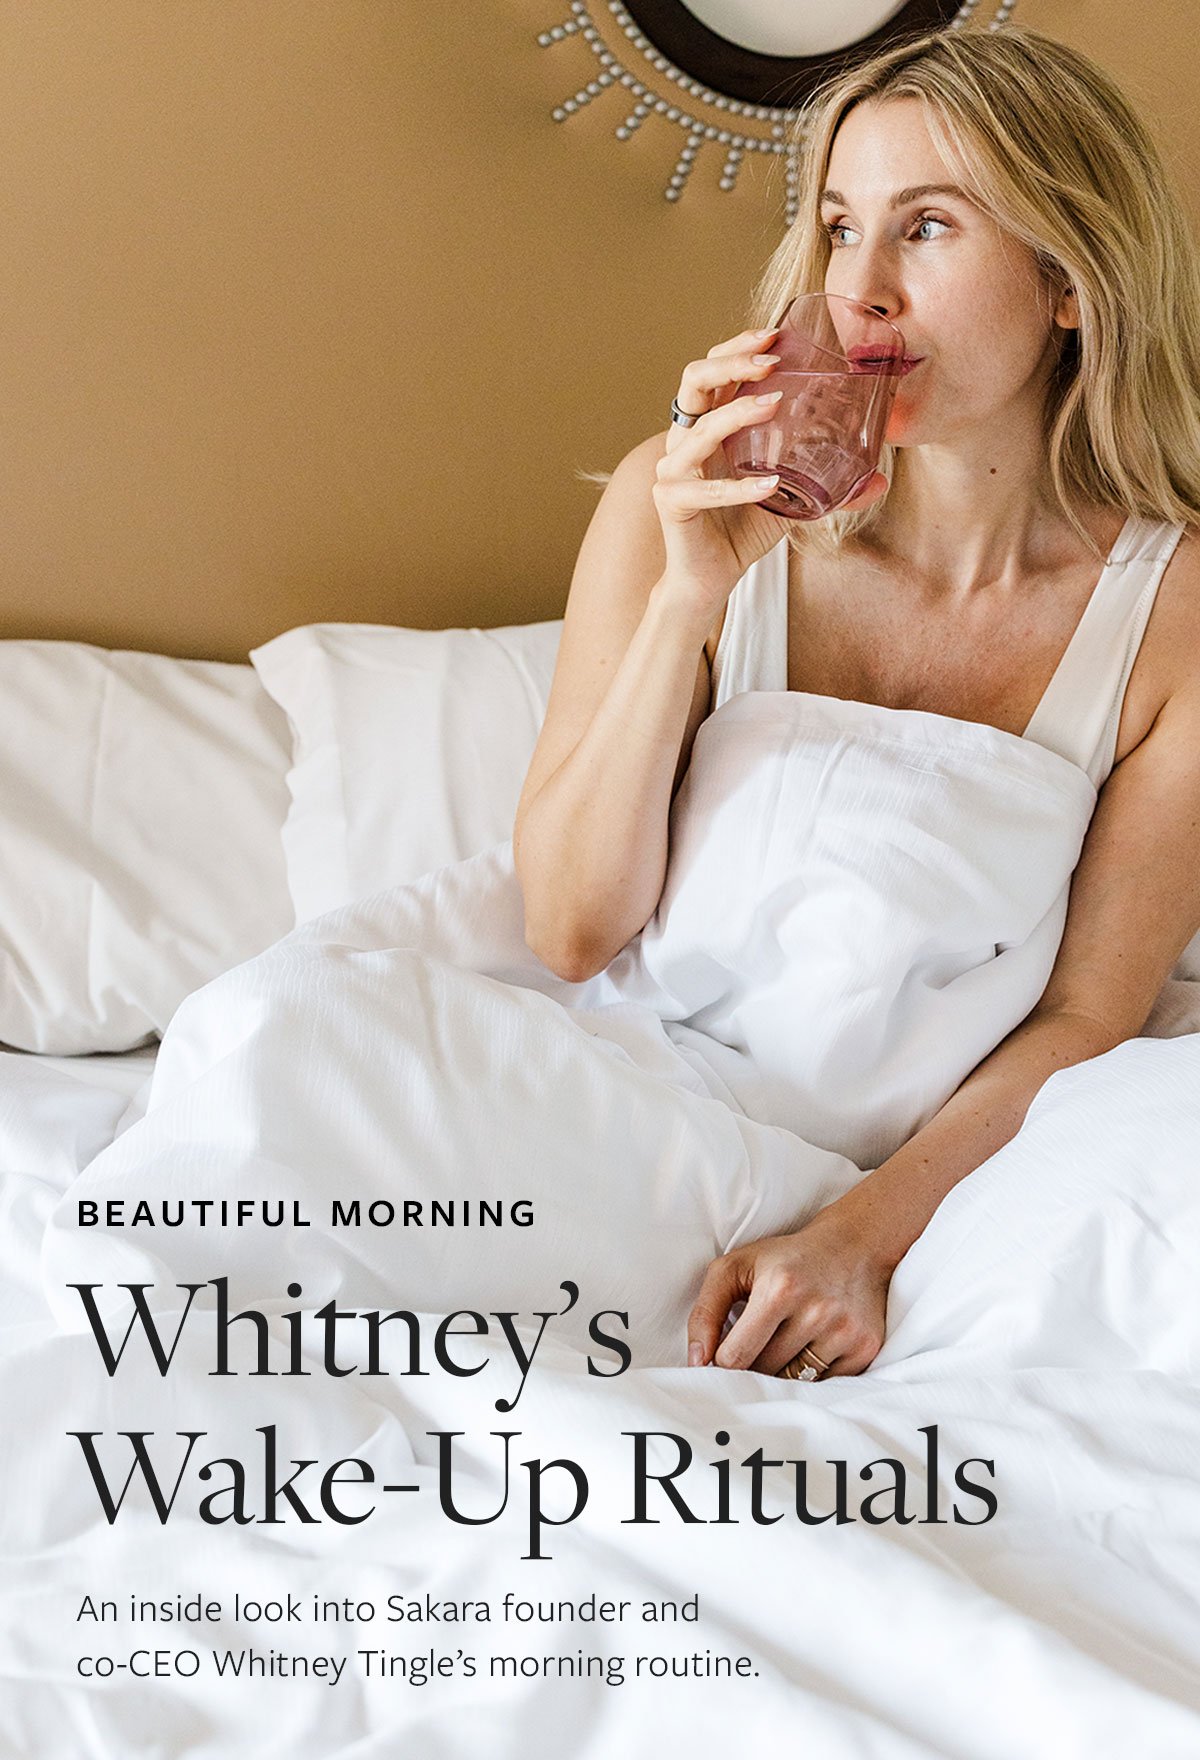 Whitney's Wake-Up Rituals